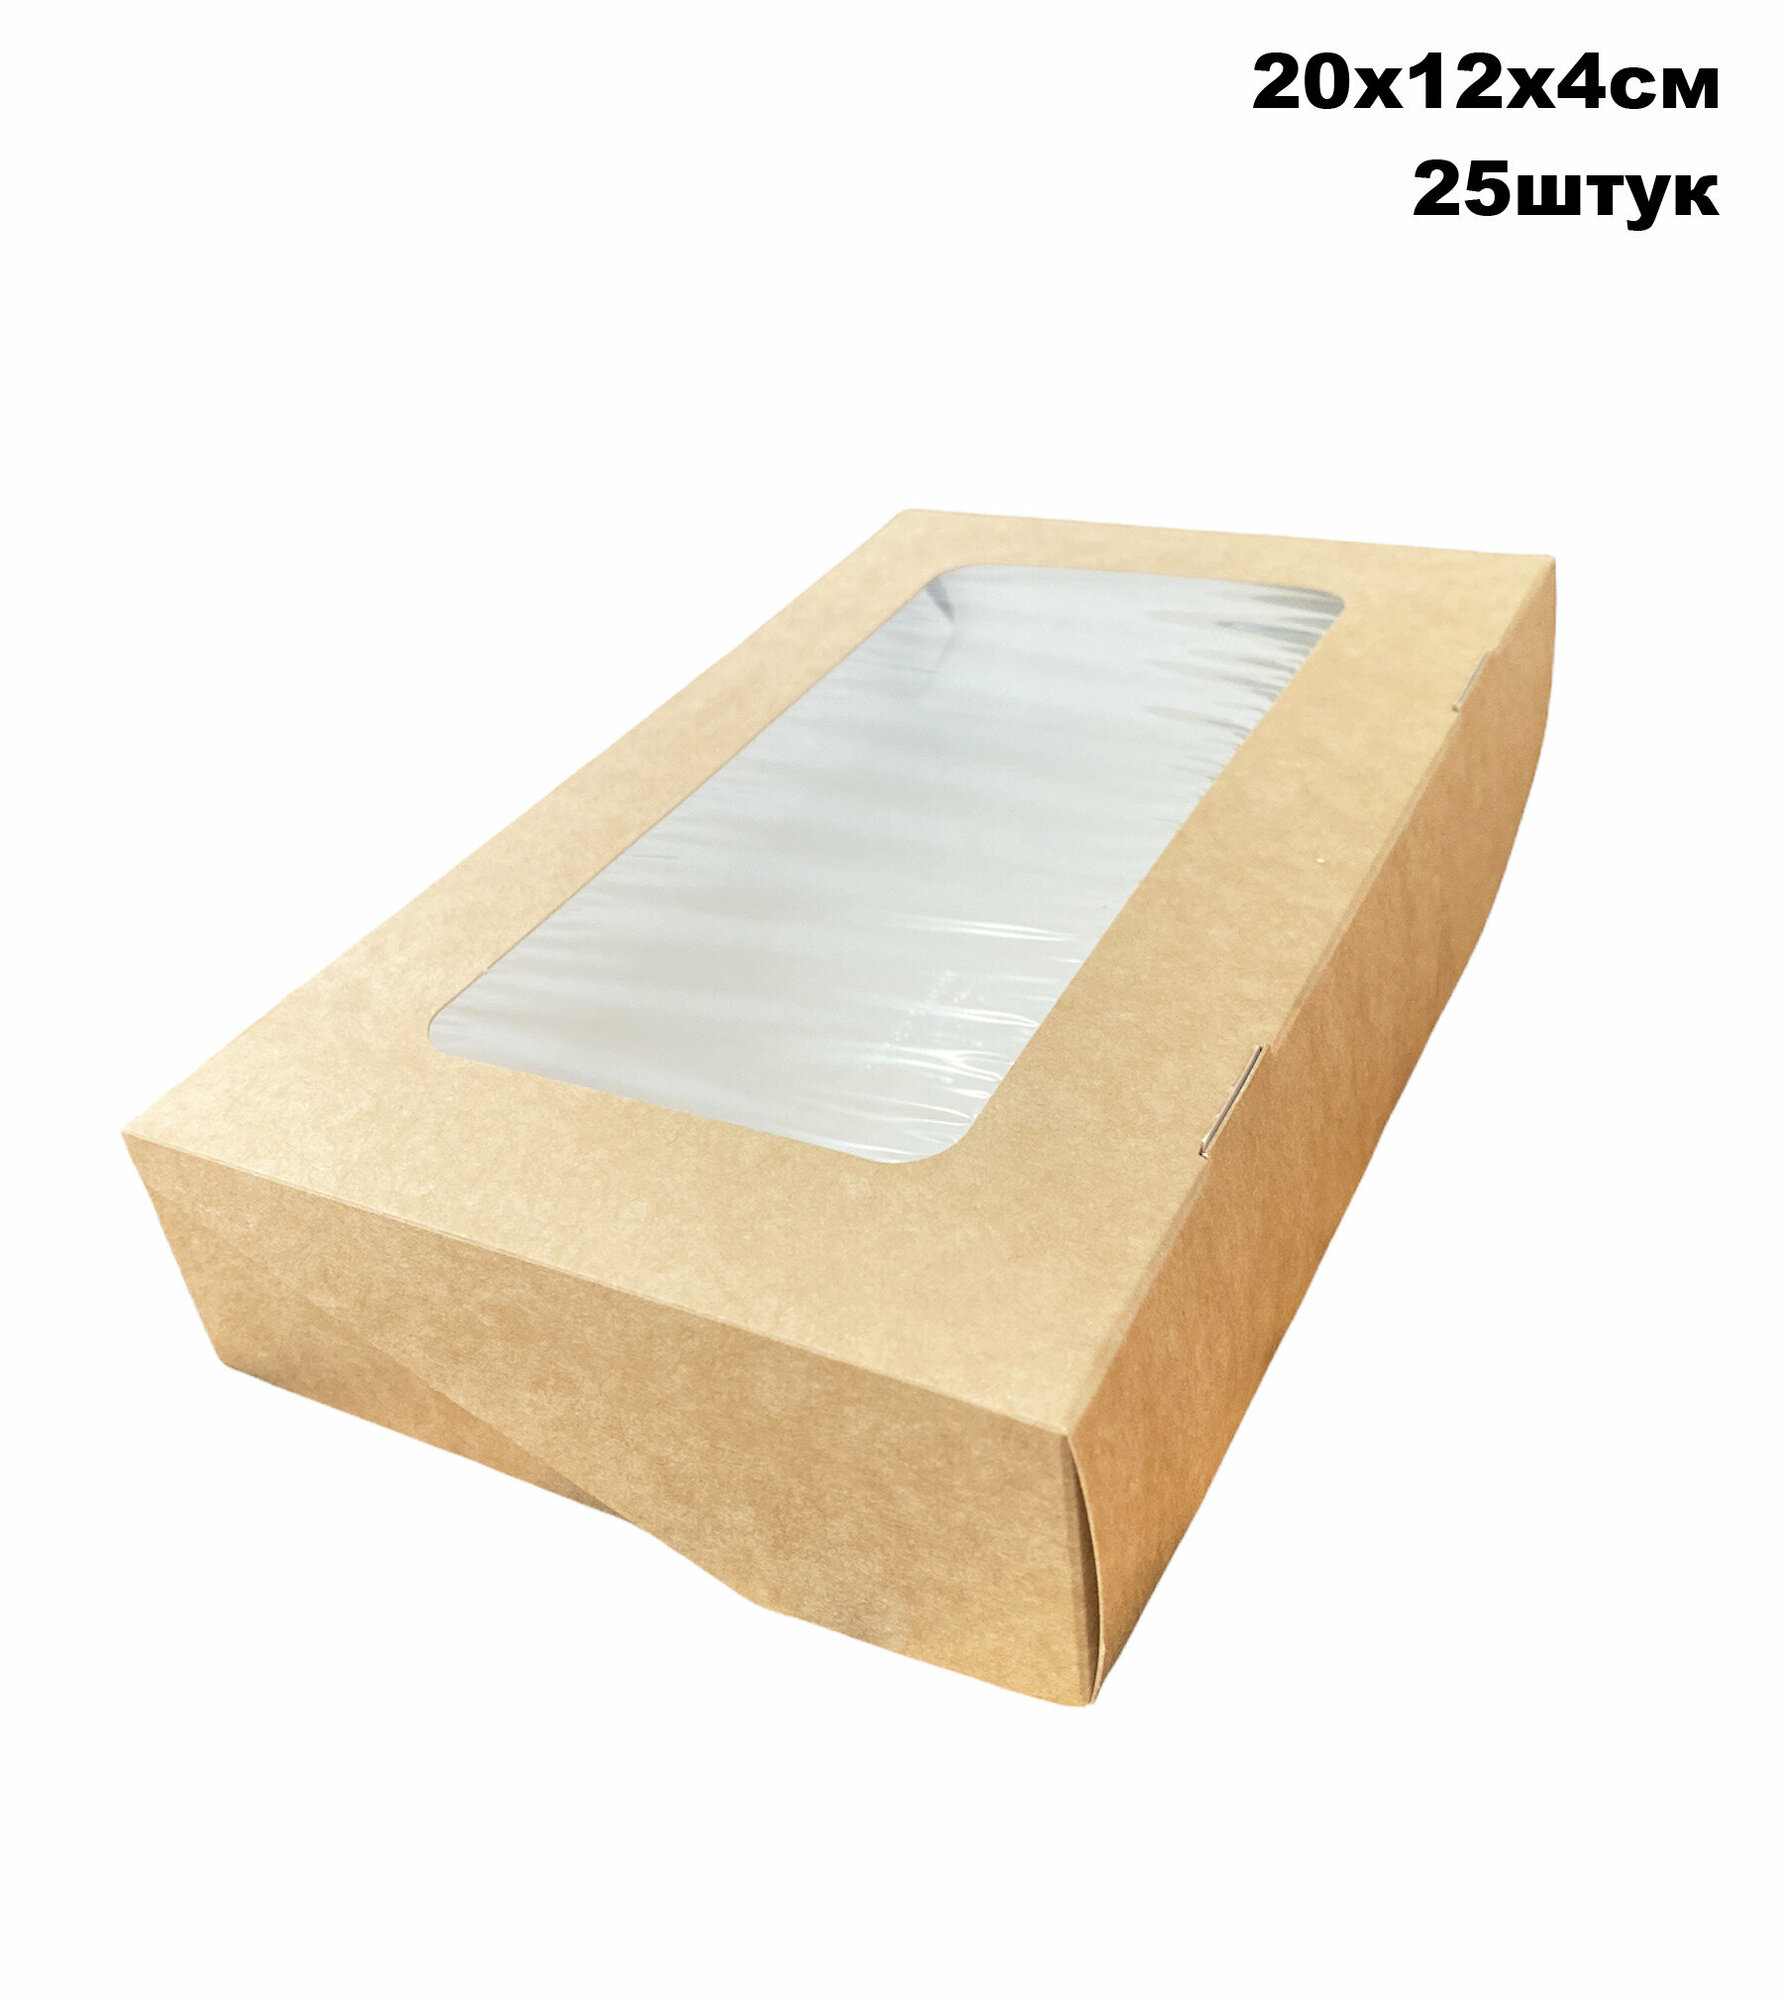 Крафт коробка с окном -20х12х4 см, 25штук